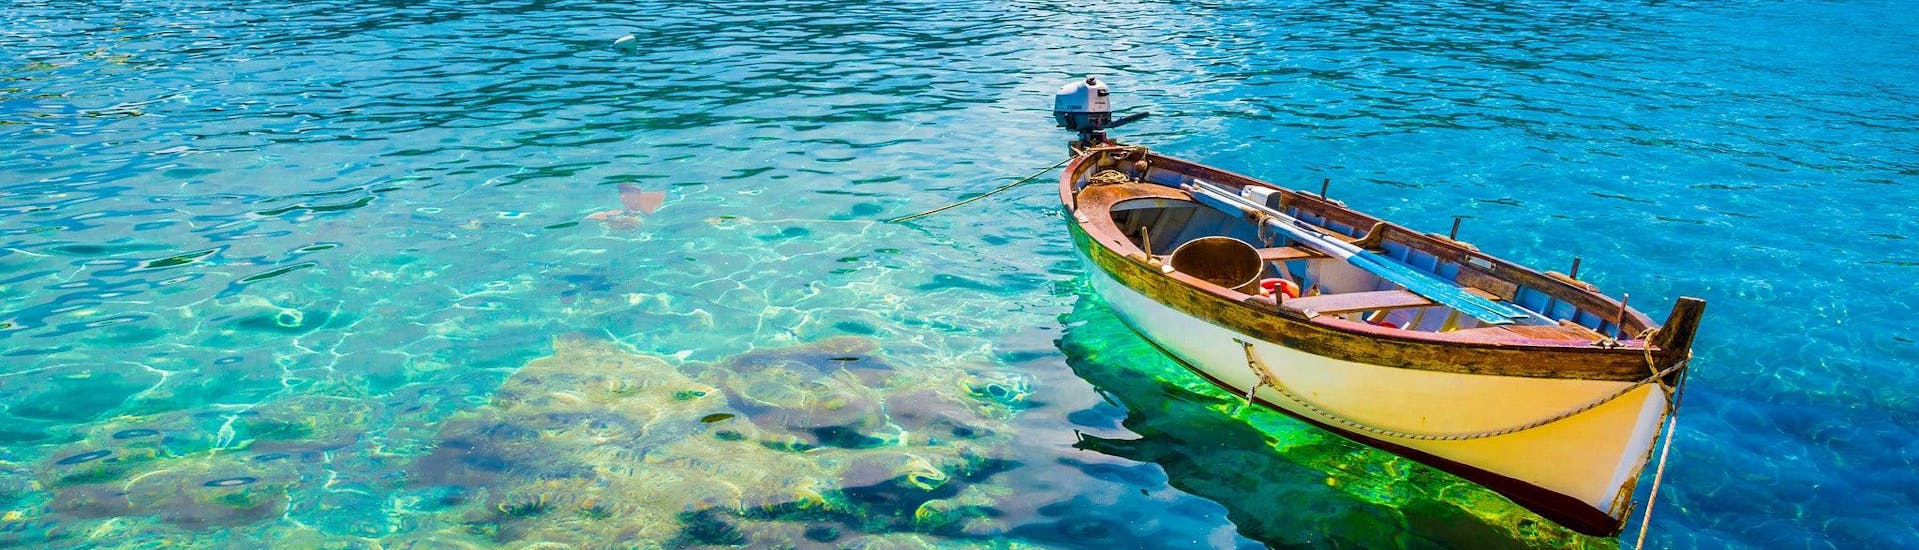 Ein Boot in den klaren Gewässern von Fetovaia, einem beliebten Ziel für Bootstouren.